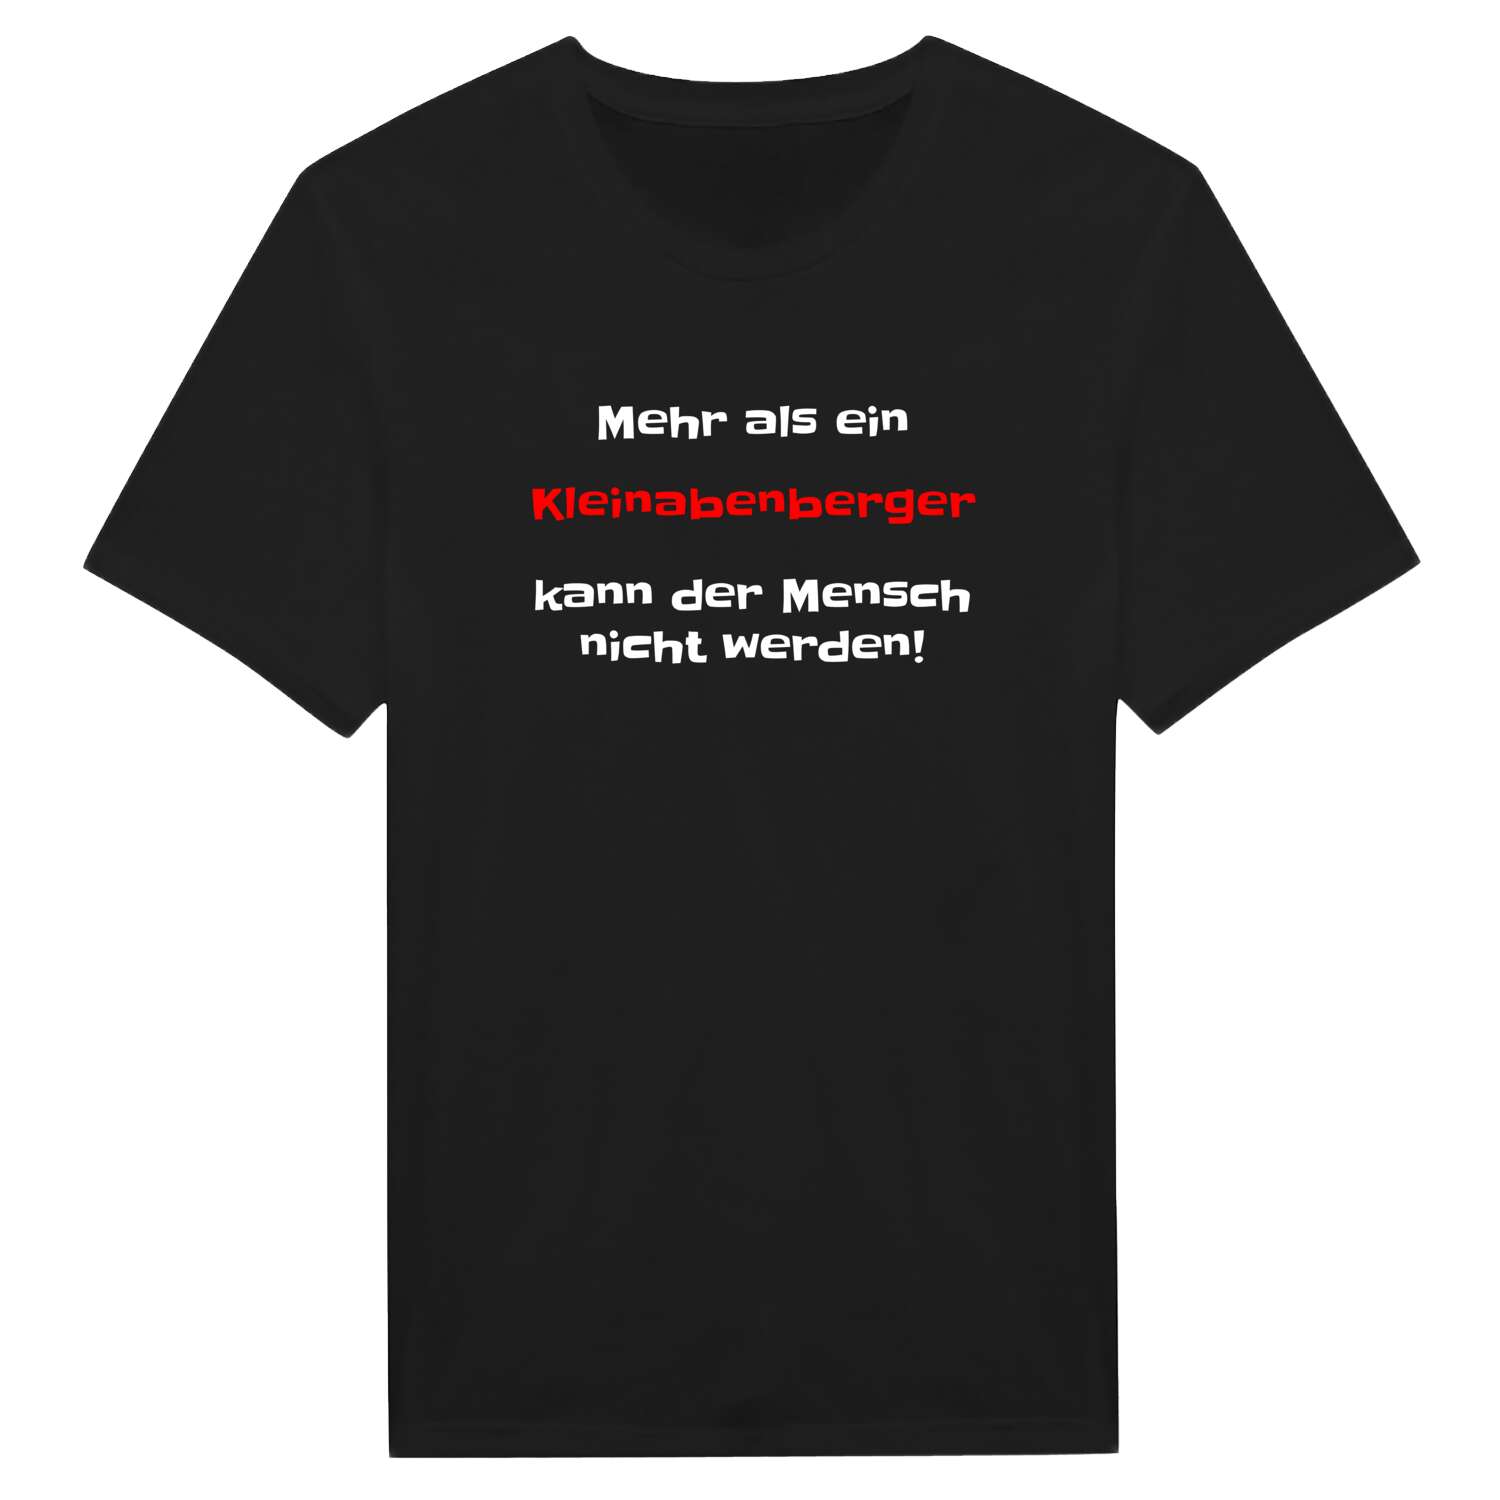 Kleinabenberg T-Shirt »Mehr als ein«